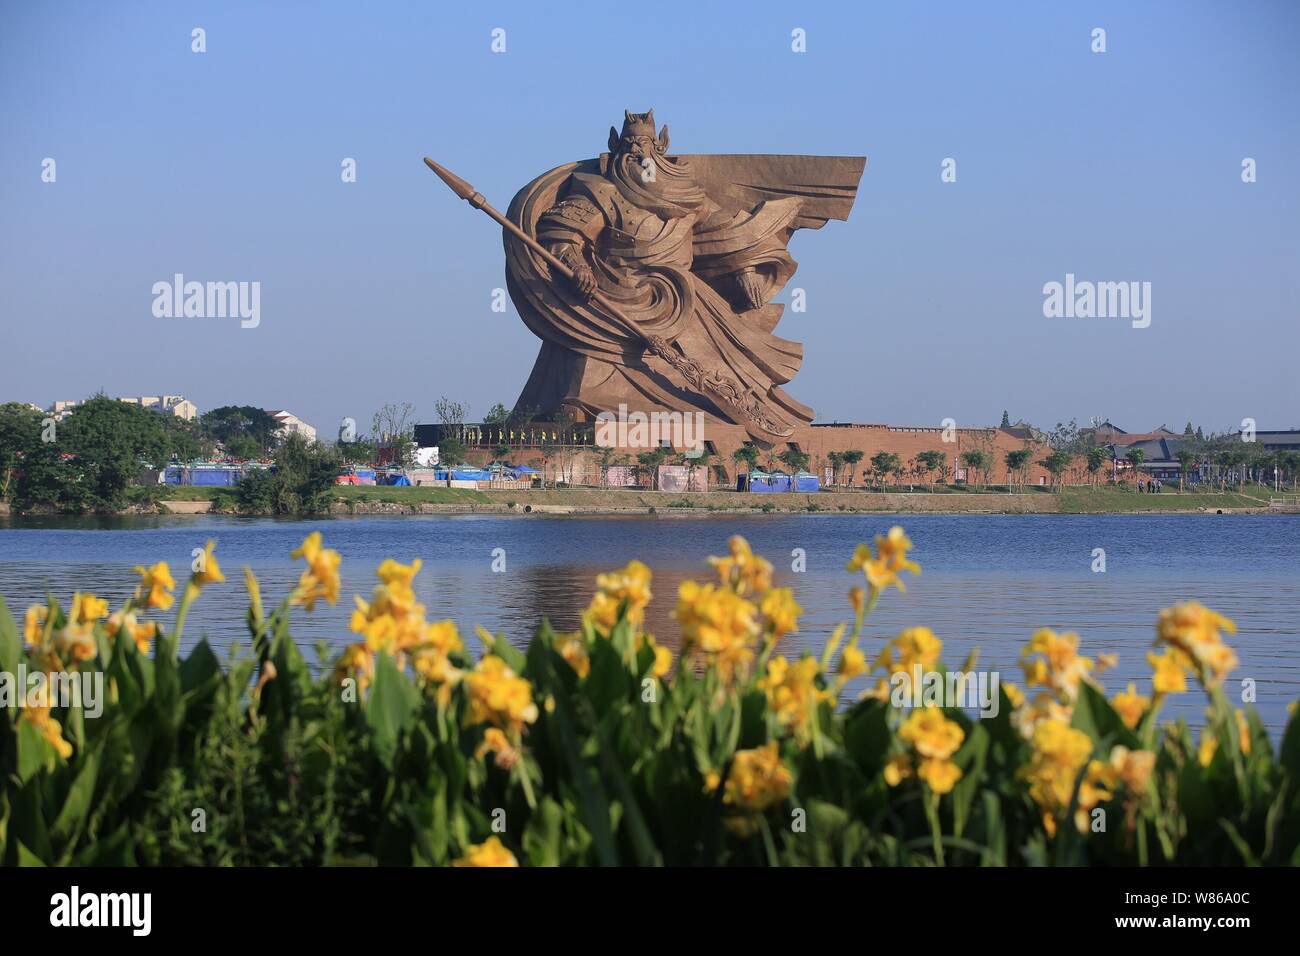 - - Datei - Die riesige Statue von alten Chinesischen general Guan Yu ist auf Anzeige an der Guan Gong Cultural Park in Jingzhou City, Central China Hubei provi Stockfoto